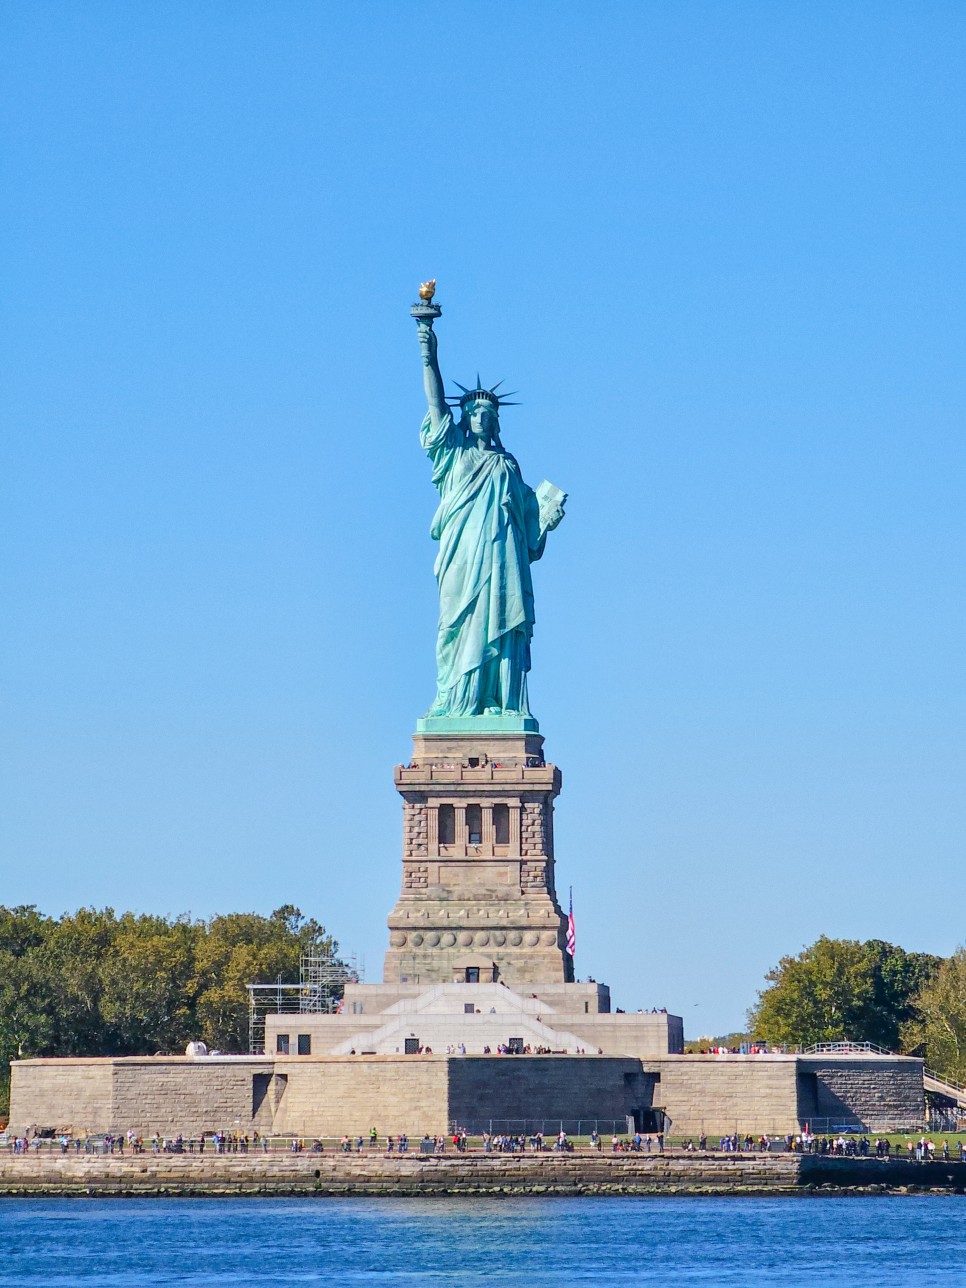 미국 뉴욕 여행 스태튼아일랜드 자유의여신상 무료 페리